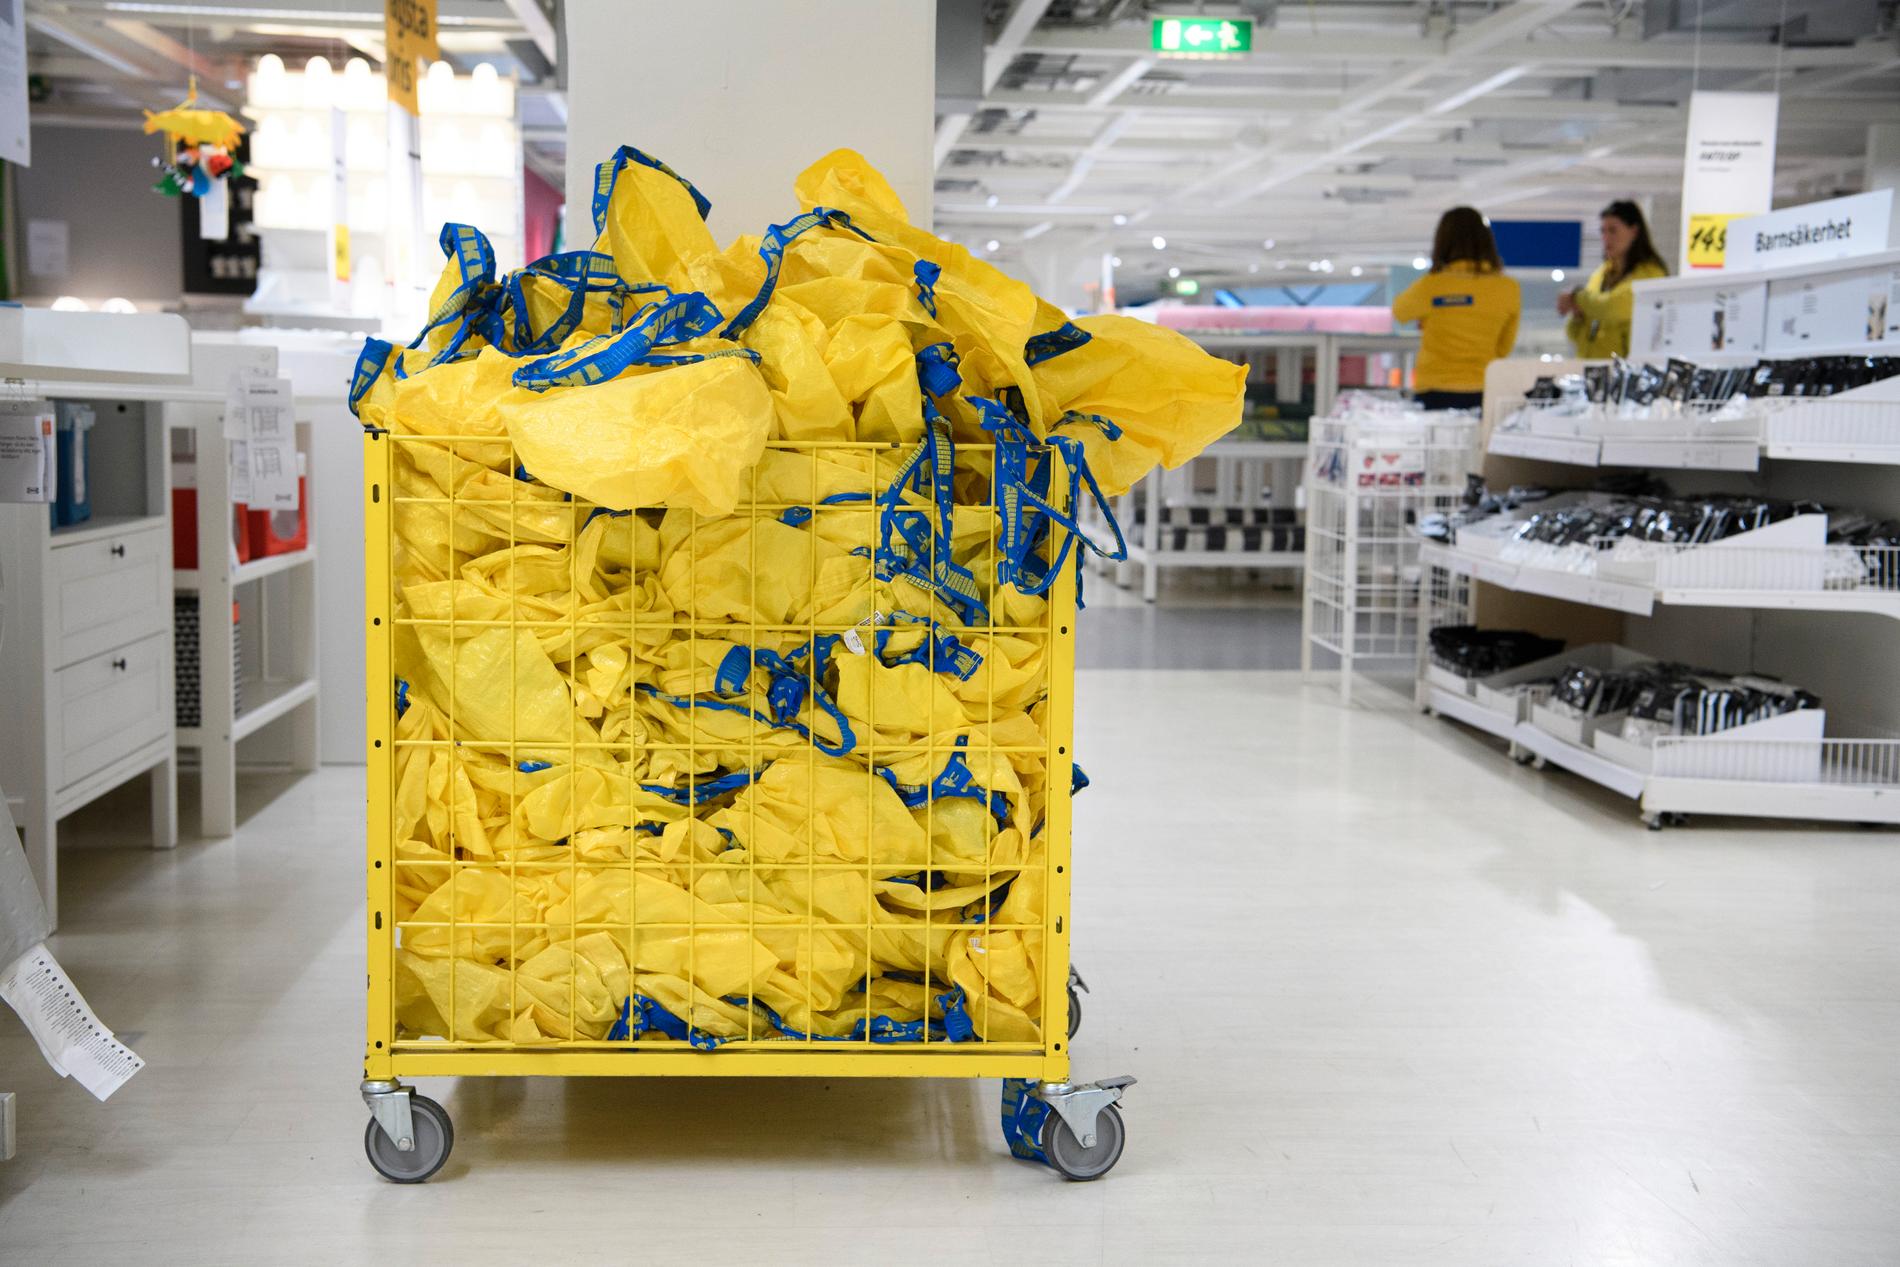 Exakt hur stor är då Ikeas varubrist i Sverige? Det vill, eller kan, företaget inte berätta.